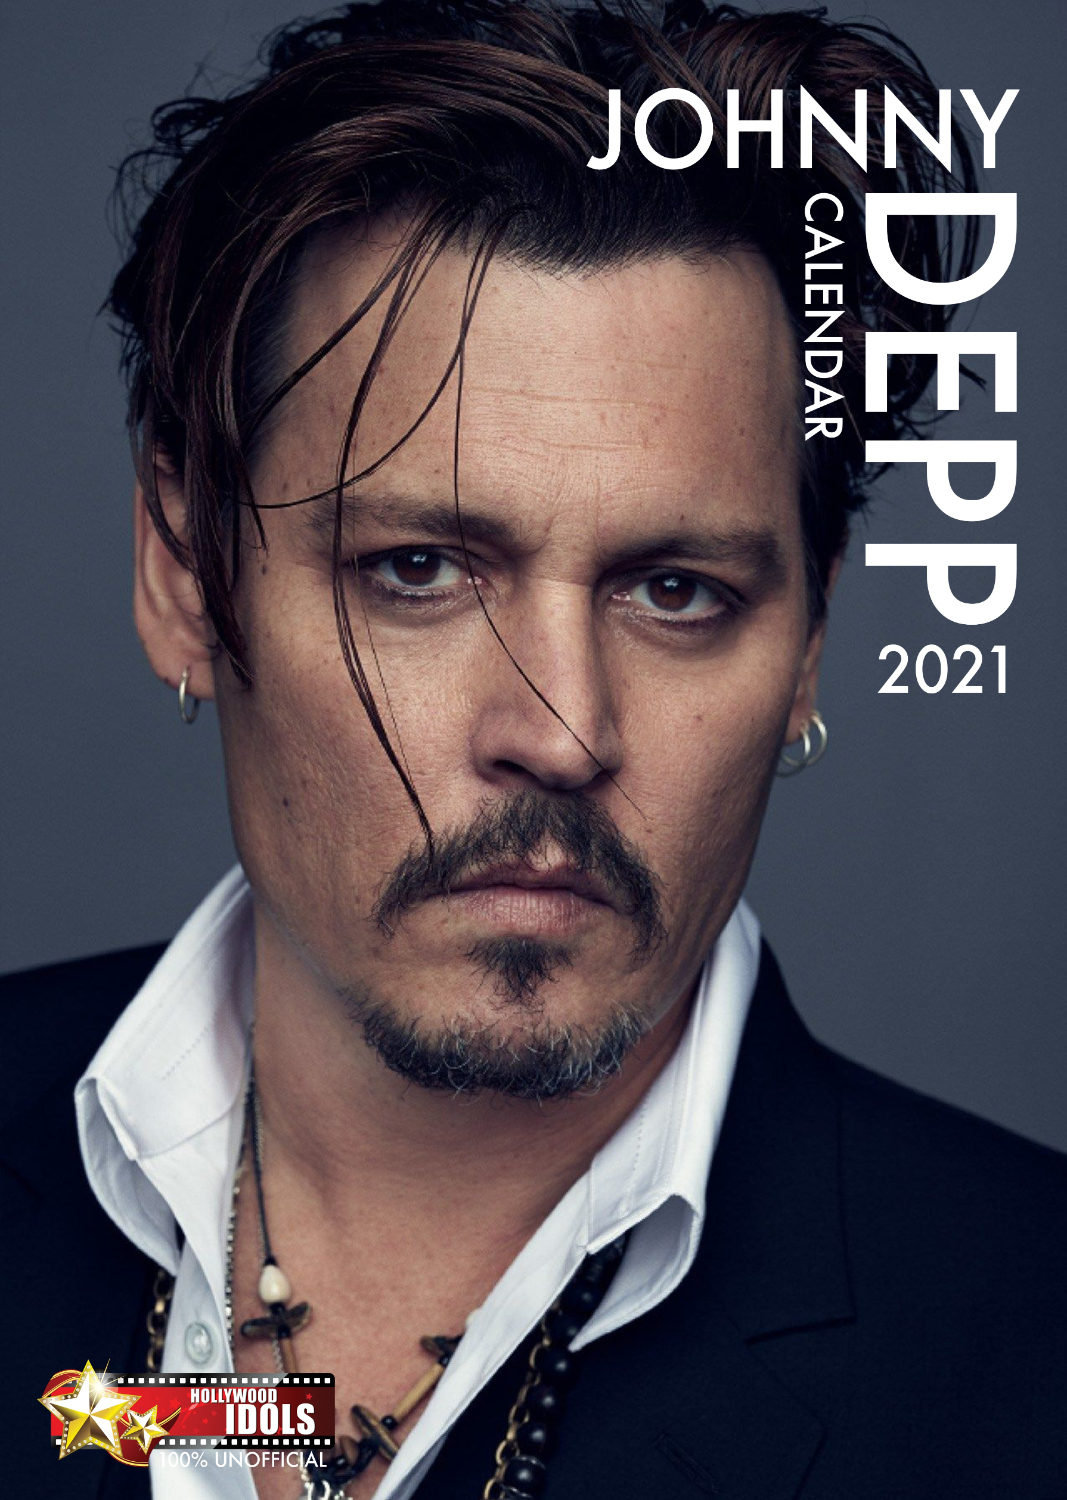 Johnny Depp Poster Calendar 2021 | eBay